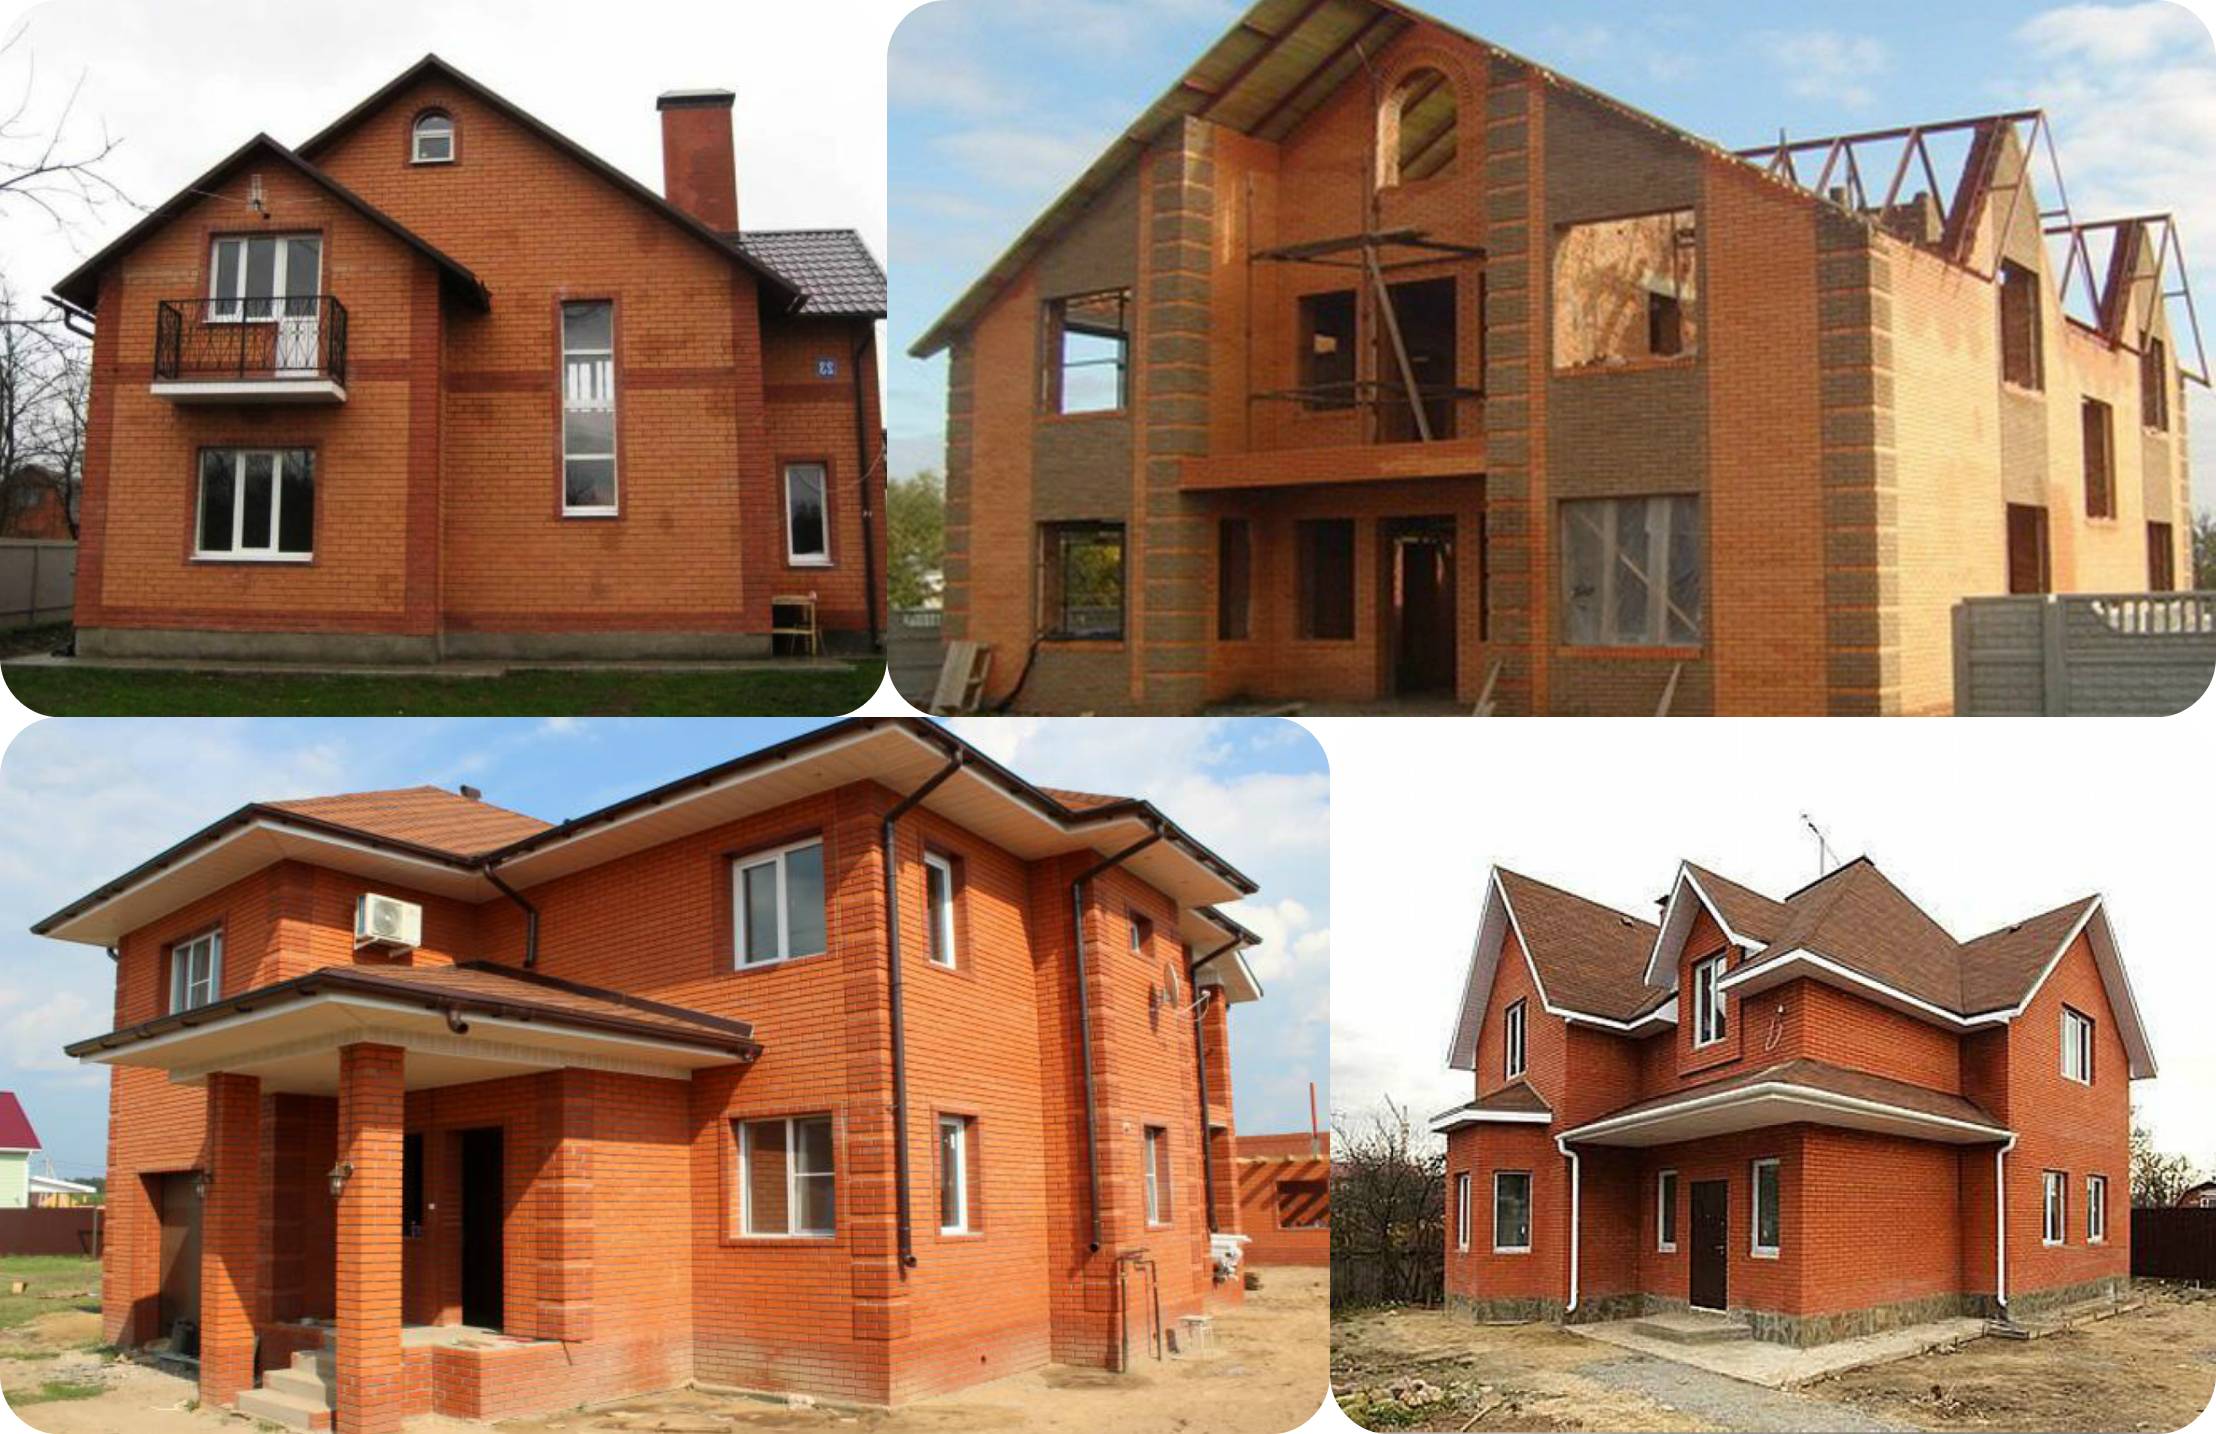 Какой дом лучше кирпичный или деревянный: плюсы и минусы, сравнение